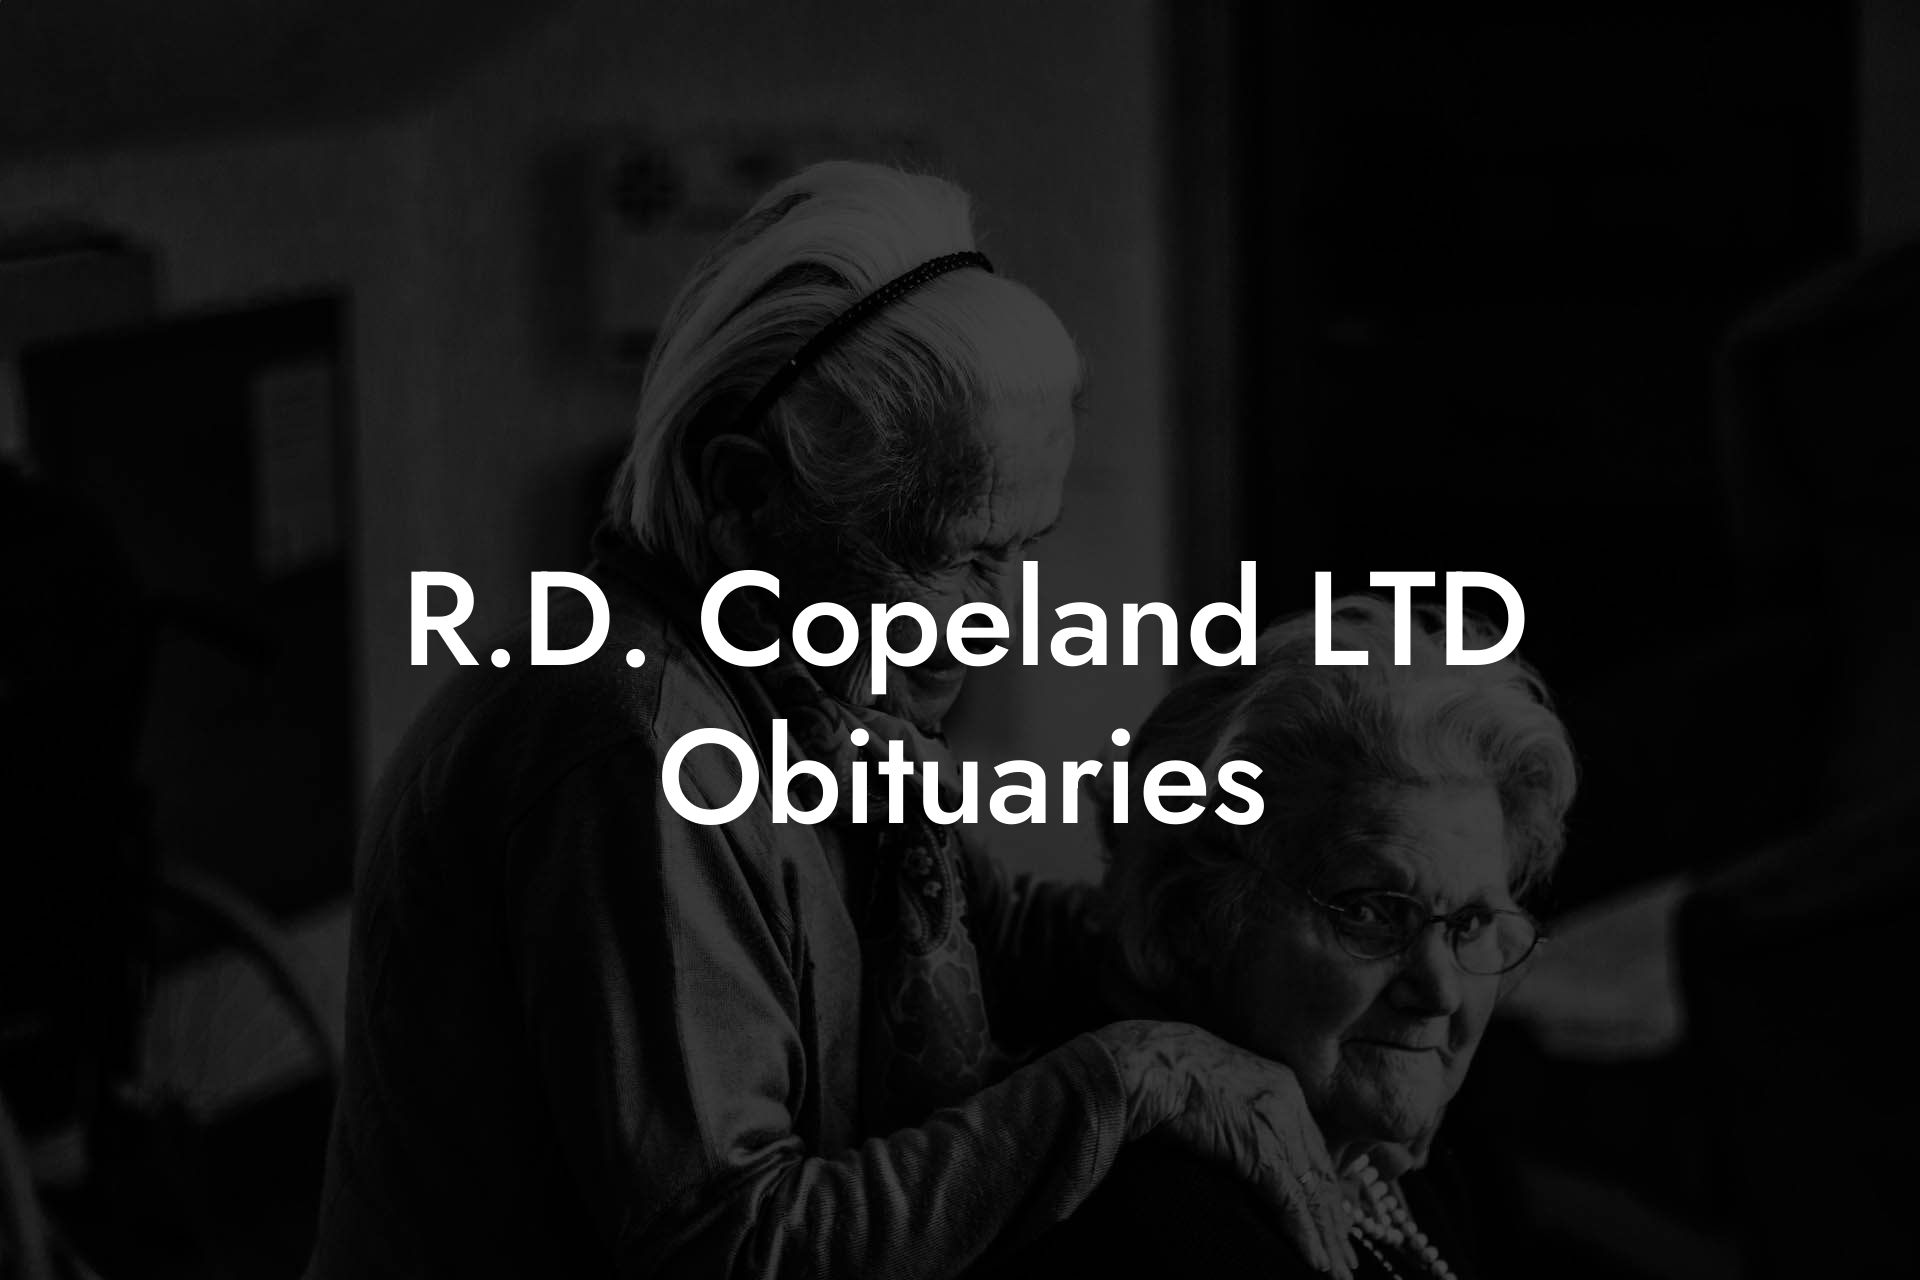 R.D. Copeland LTD Obituaries